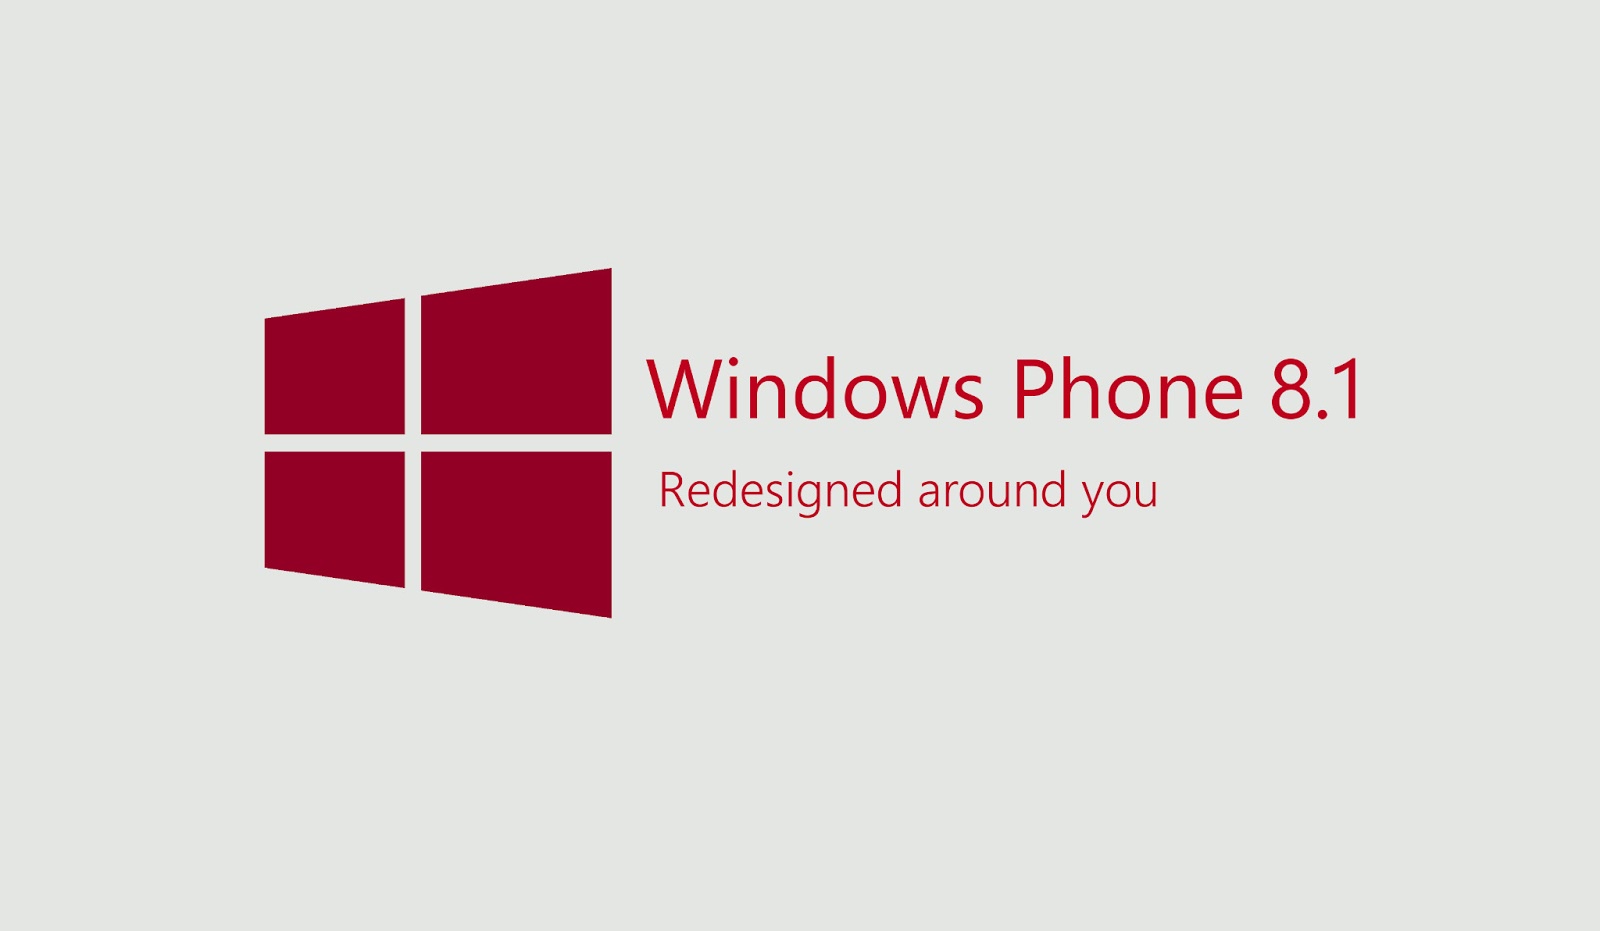 كيفية تحديث ويندوز فون 8.1 مجانا بالتفصيل windows phone 8.1